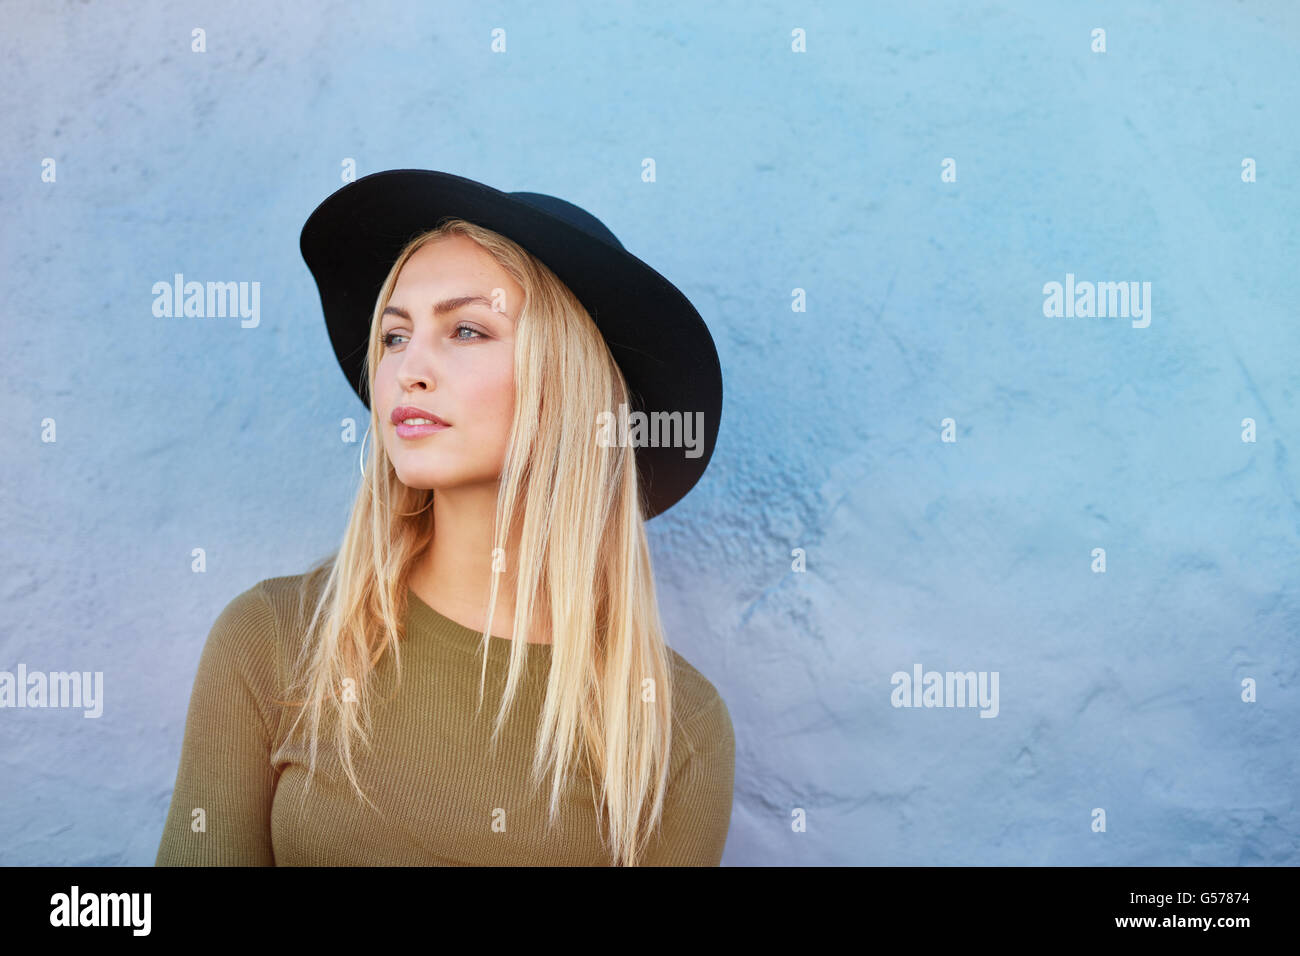 Porträt von attraktiven jungen weiblichen Modell mit Hut wegschauen gegen blaue Wand. Kaukasische junge, blonde Frau mit Textfreiraum. Stockfoto